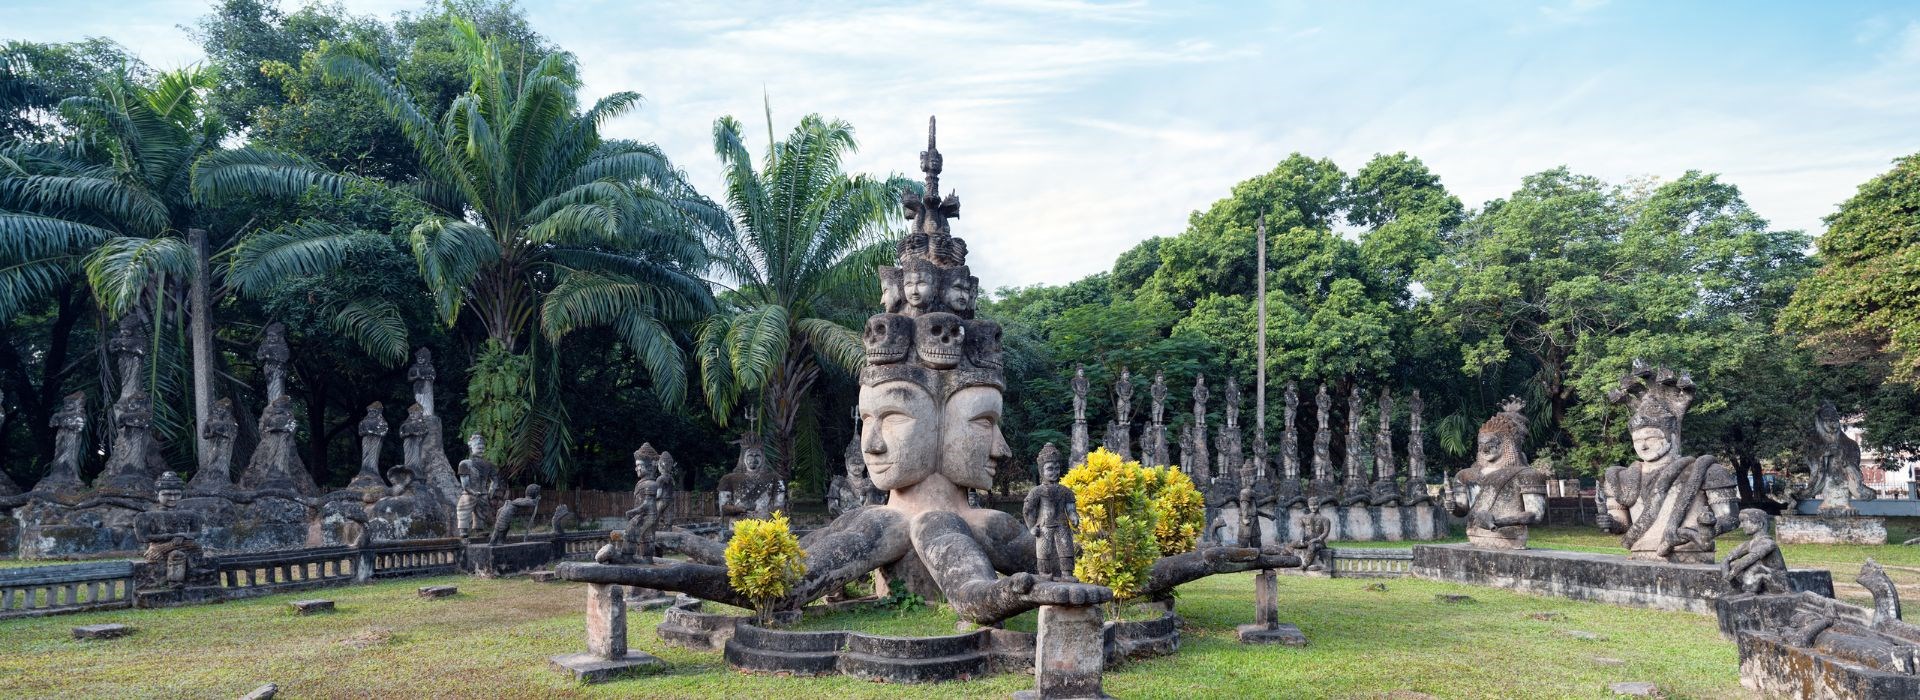 Visiter Le parc des bouddhas - Laos